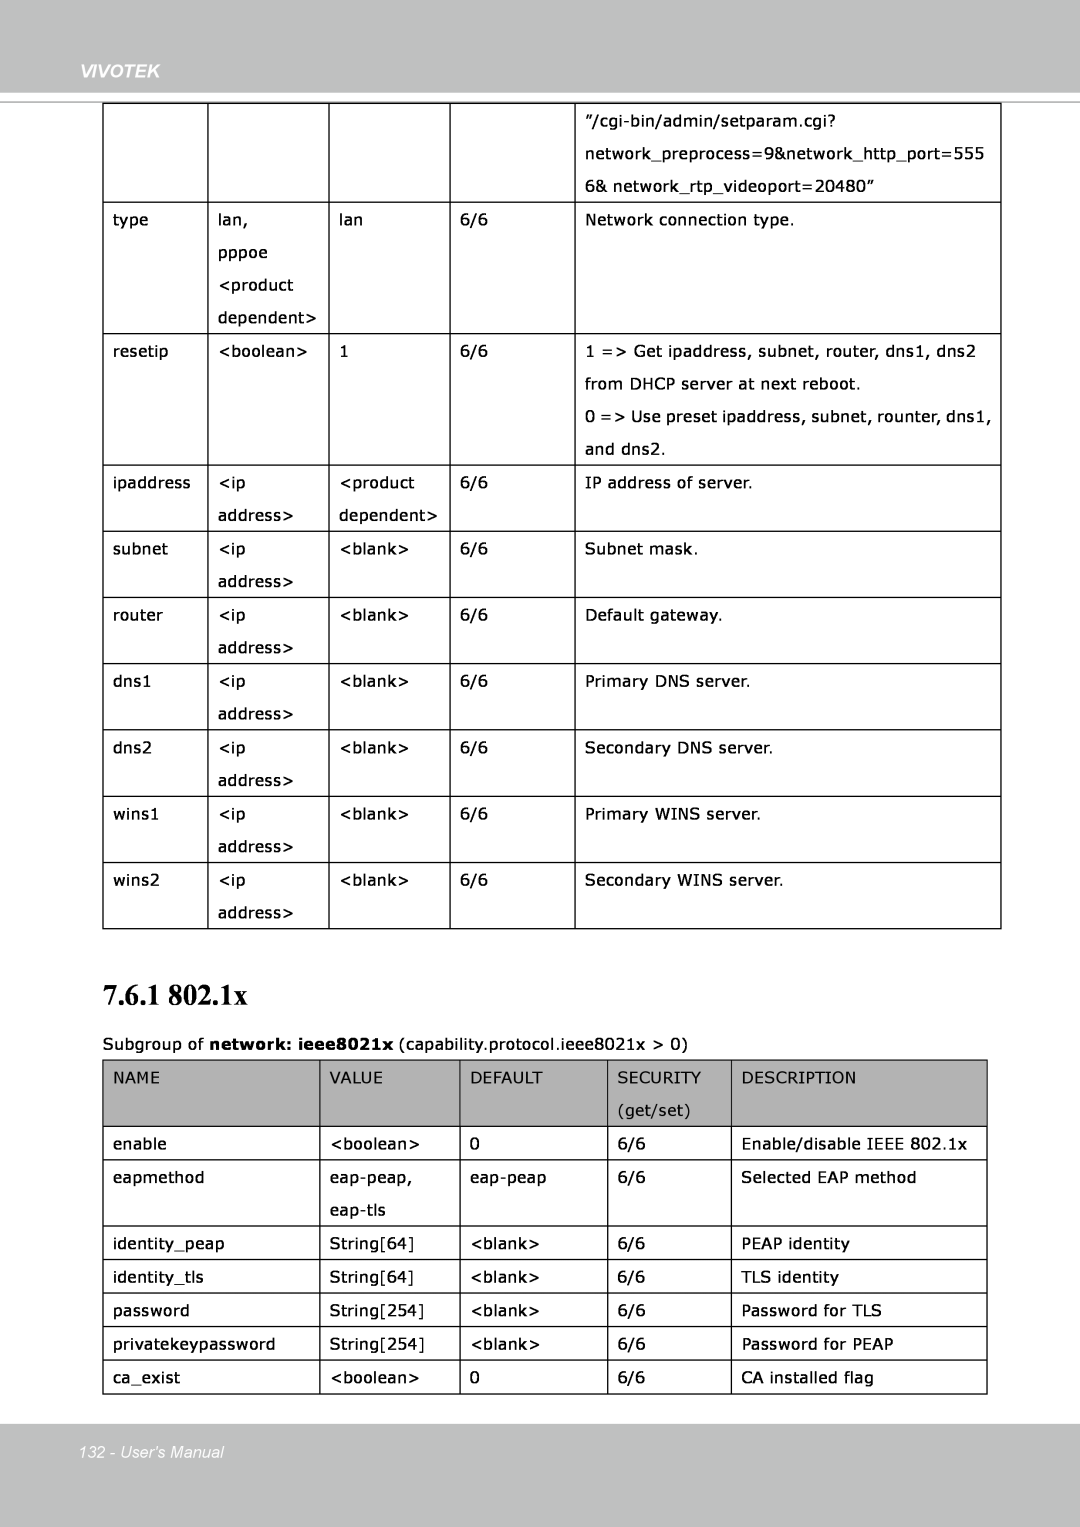 Vivotek FE8171V manual 7.6.1, Vivotek, Users Manual 